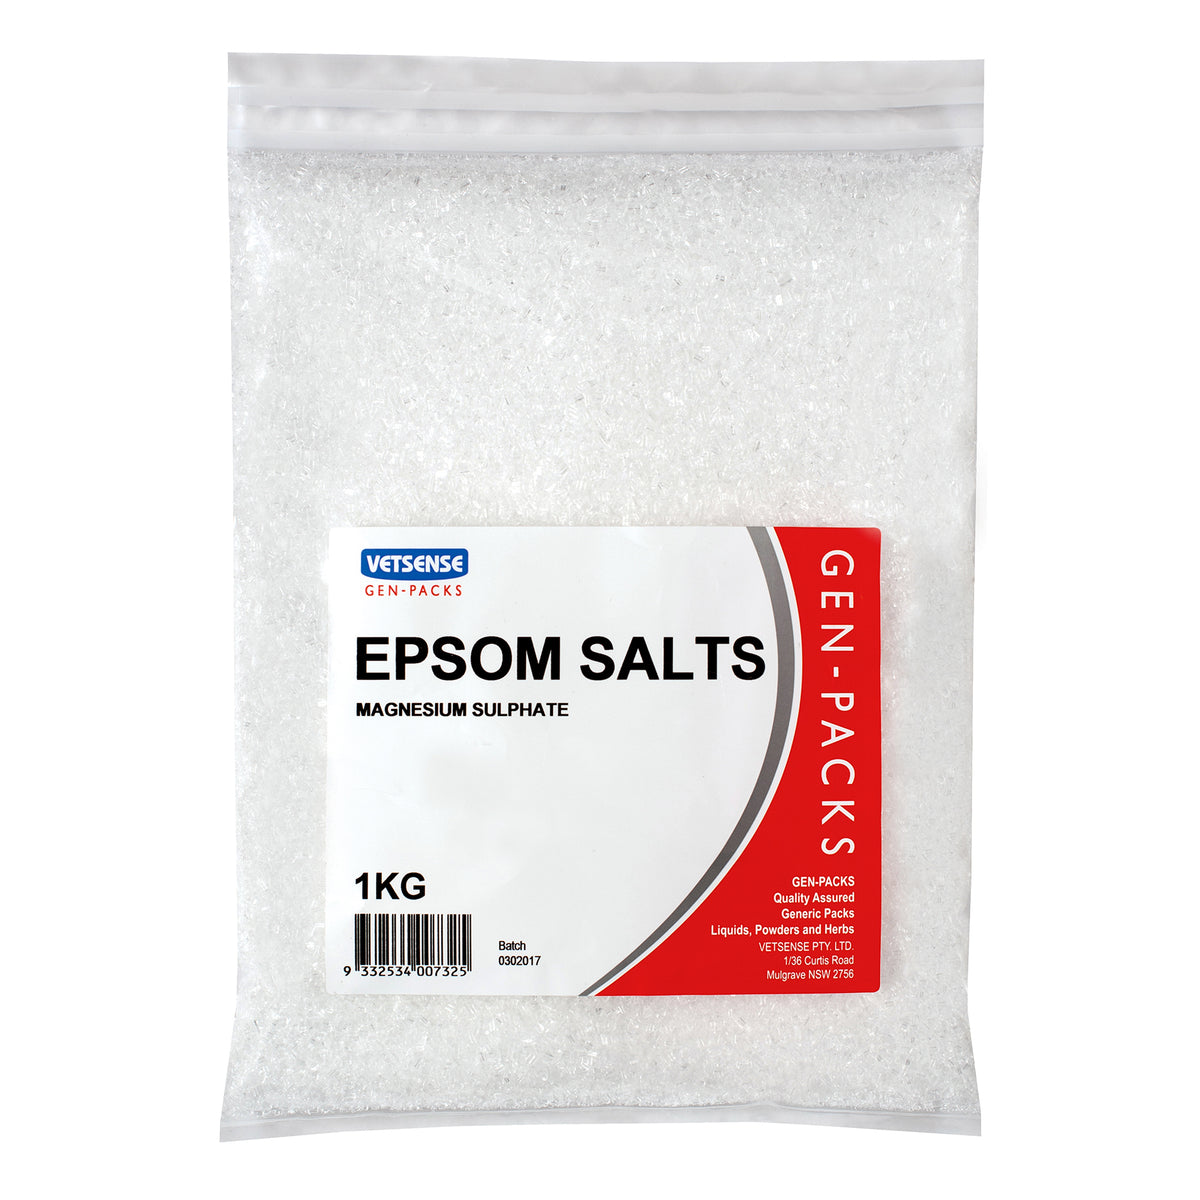 Vetsense Gen Packs Epsom Salts